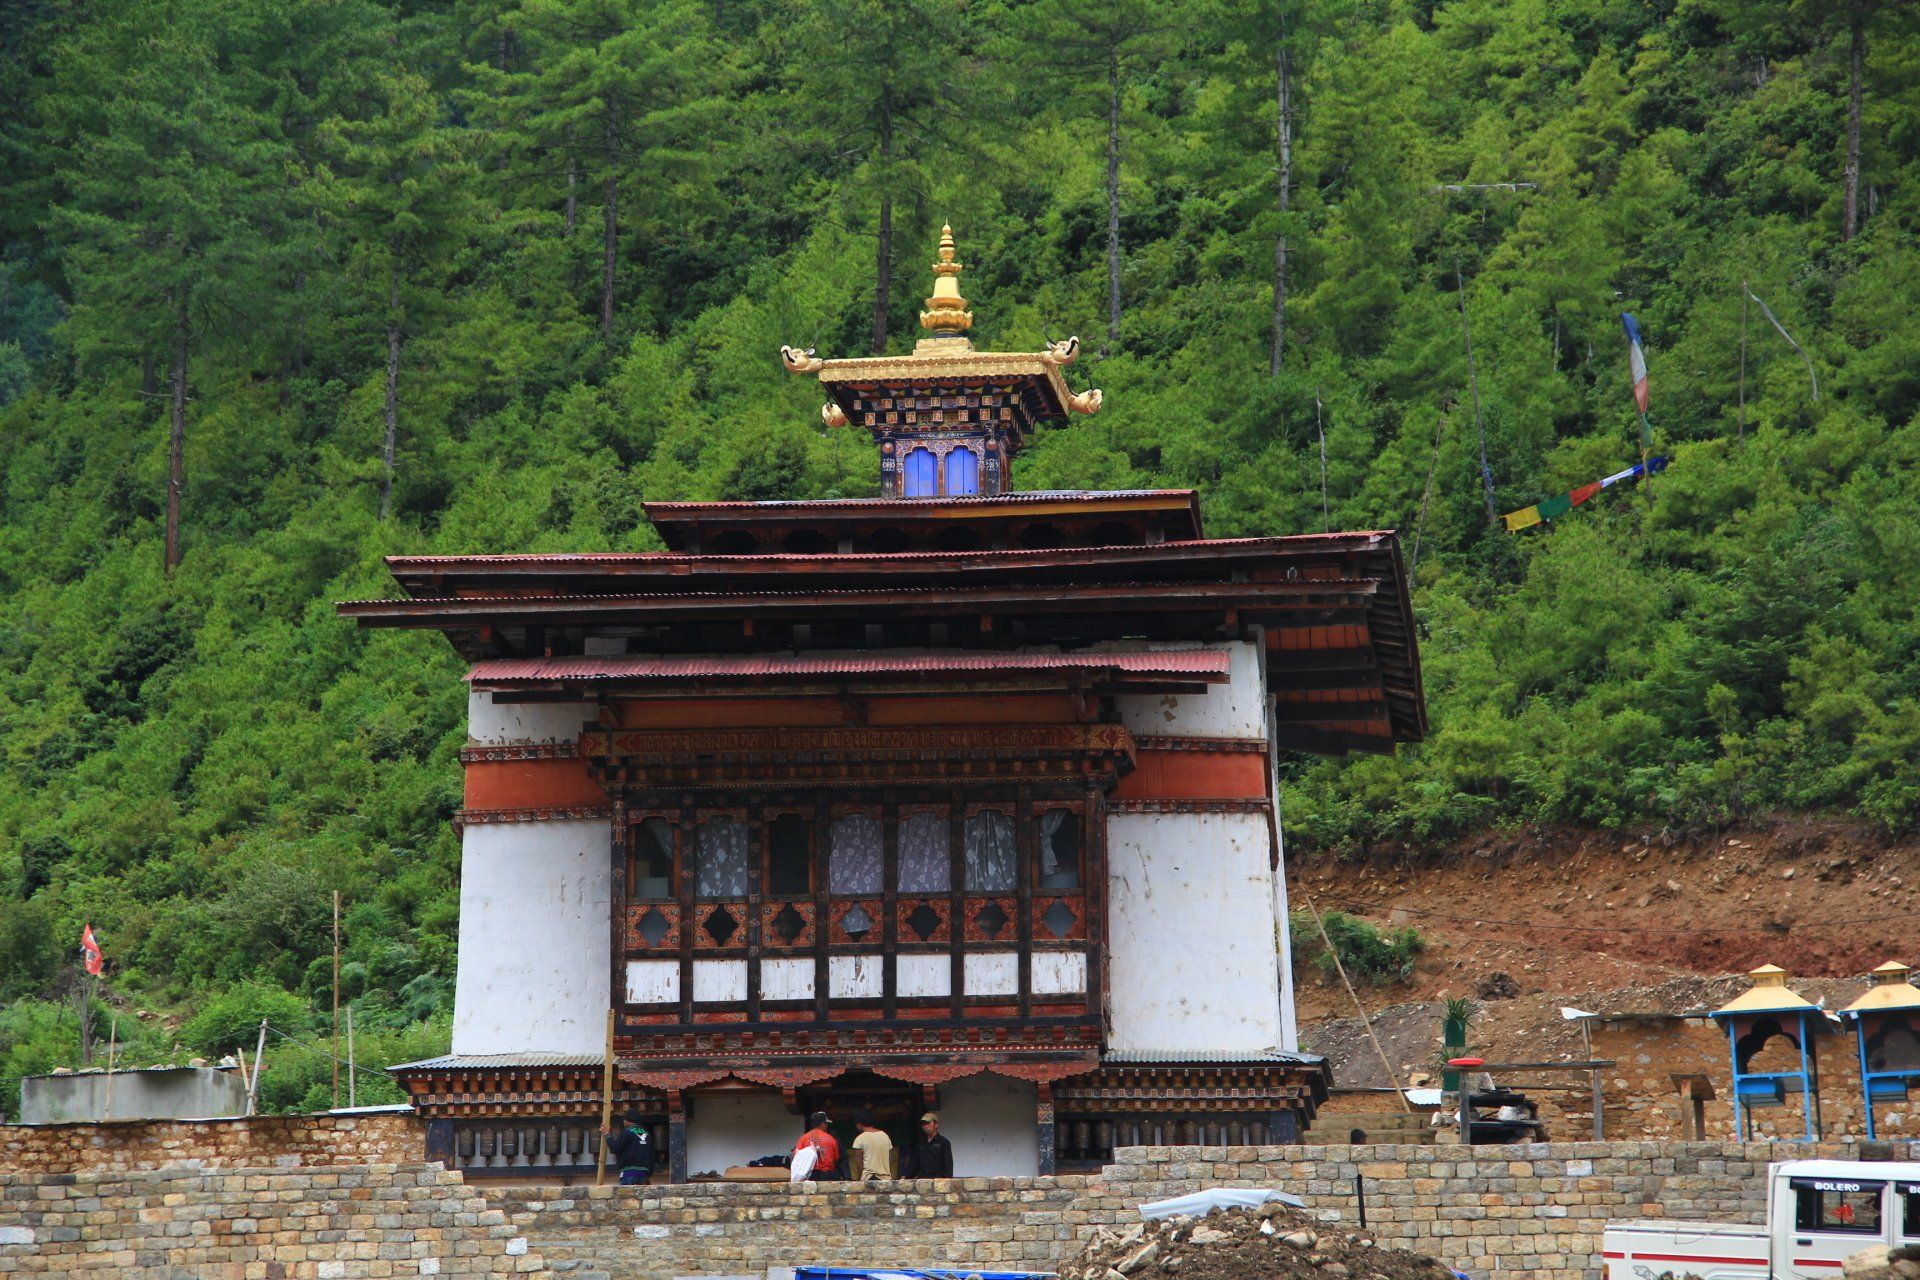 Lhakhang Karpo in Haa